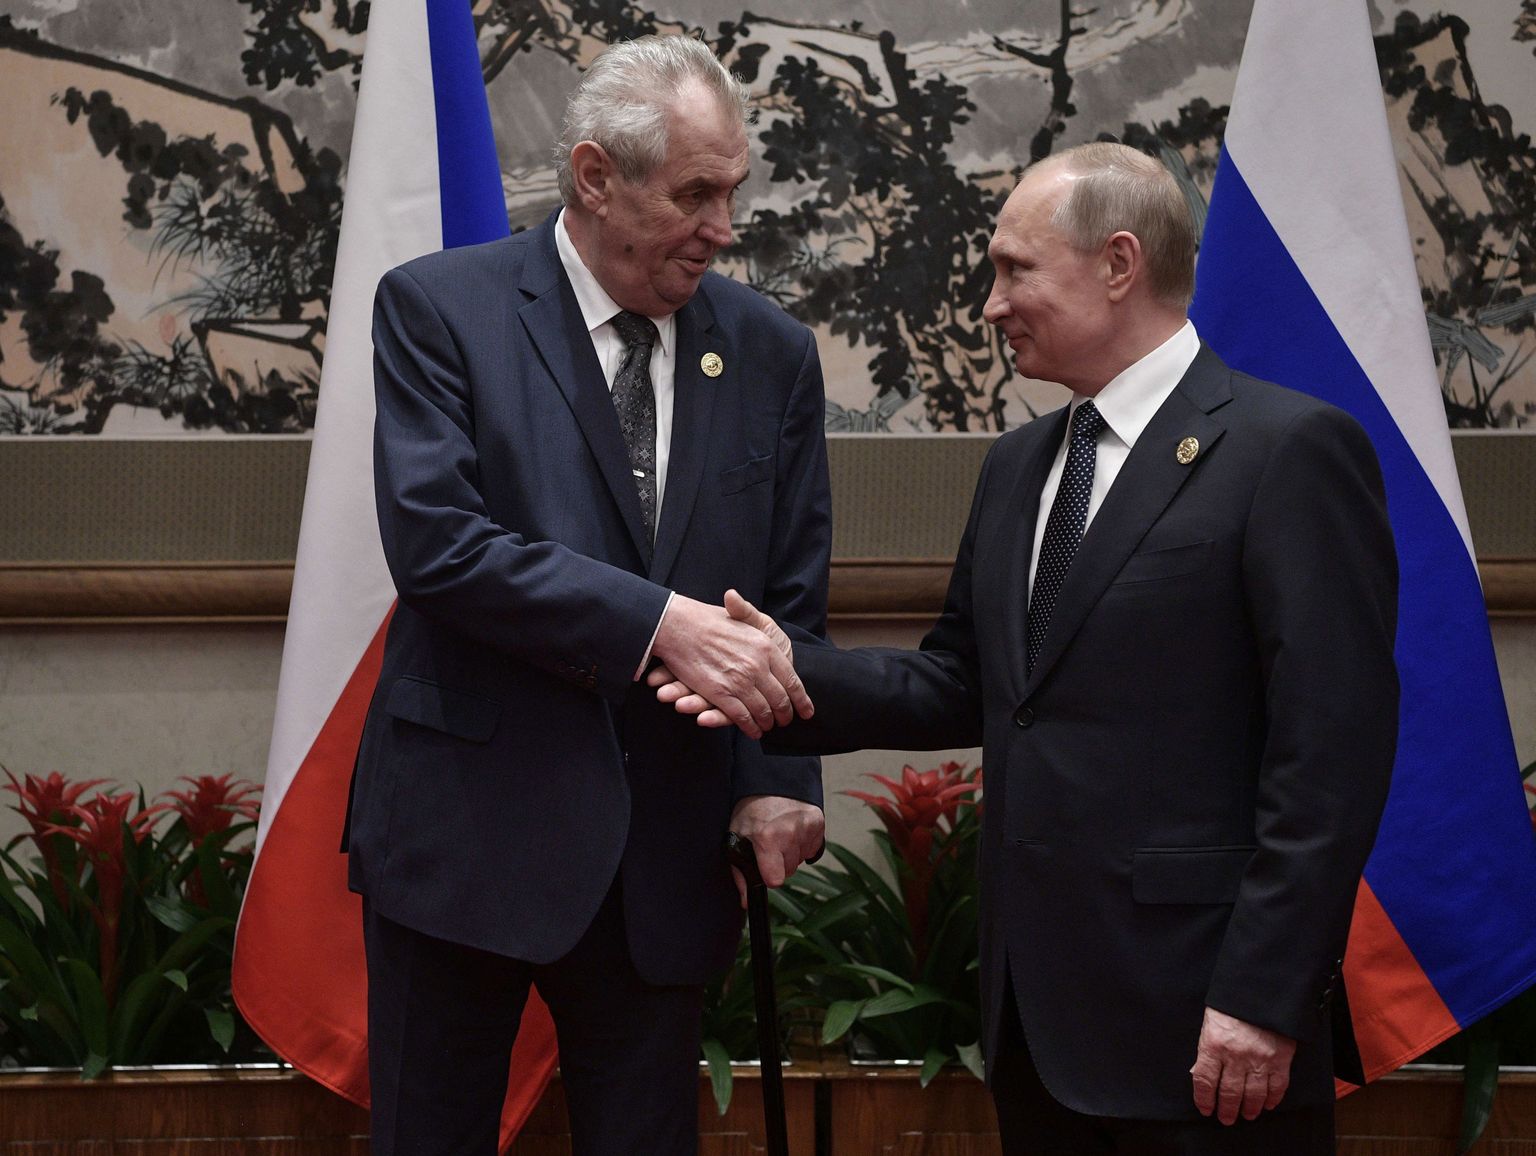 Miloš Zeman ja Vladimir Putin